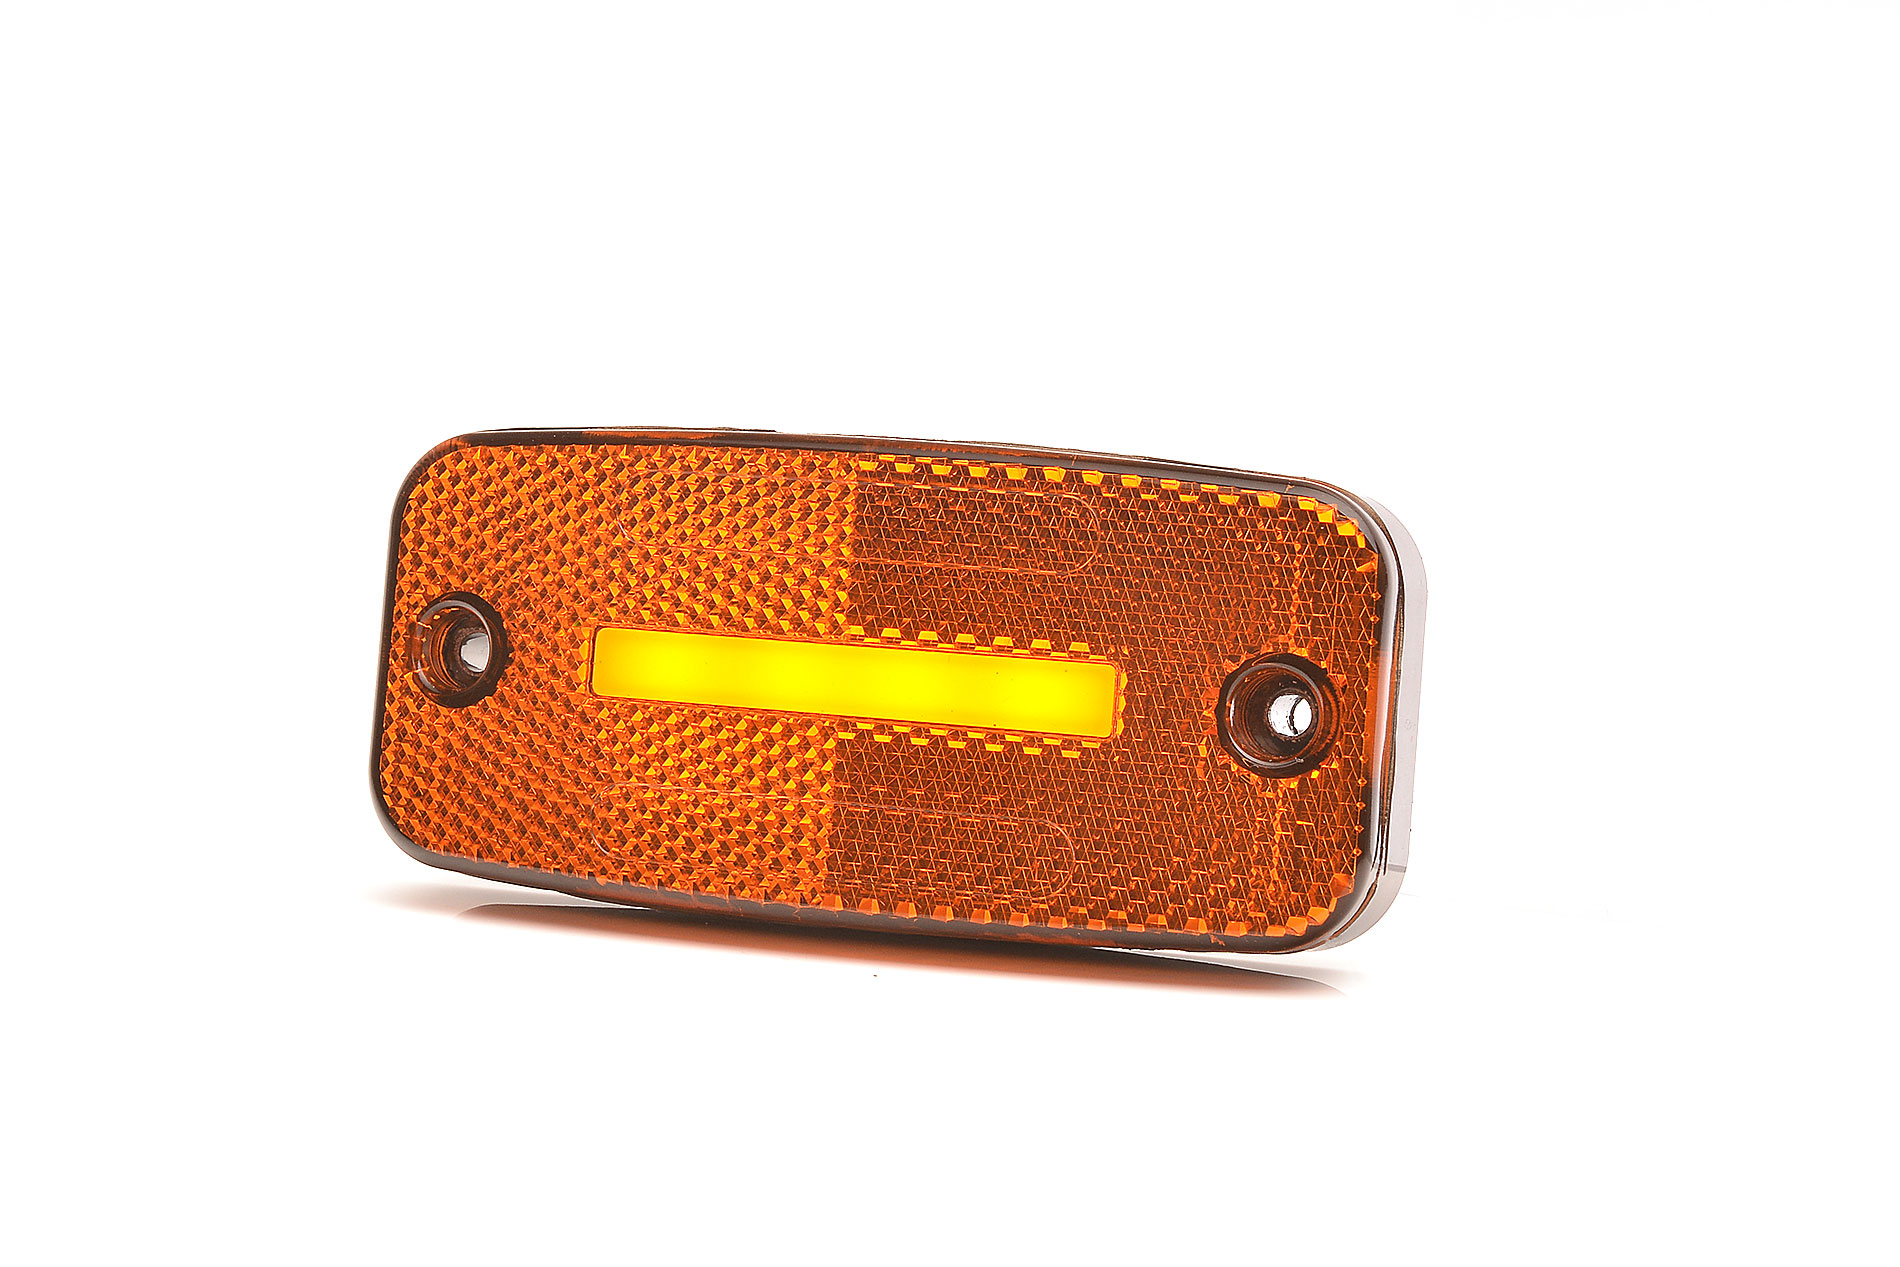 Lămpi de poziție și marcaj - Lampă marcaj lateral WAS LED portocaliu, cu semnalizare și catadioptru, fomcoshop.ro